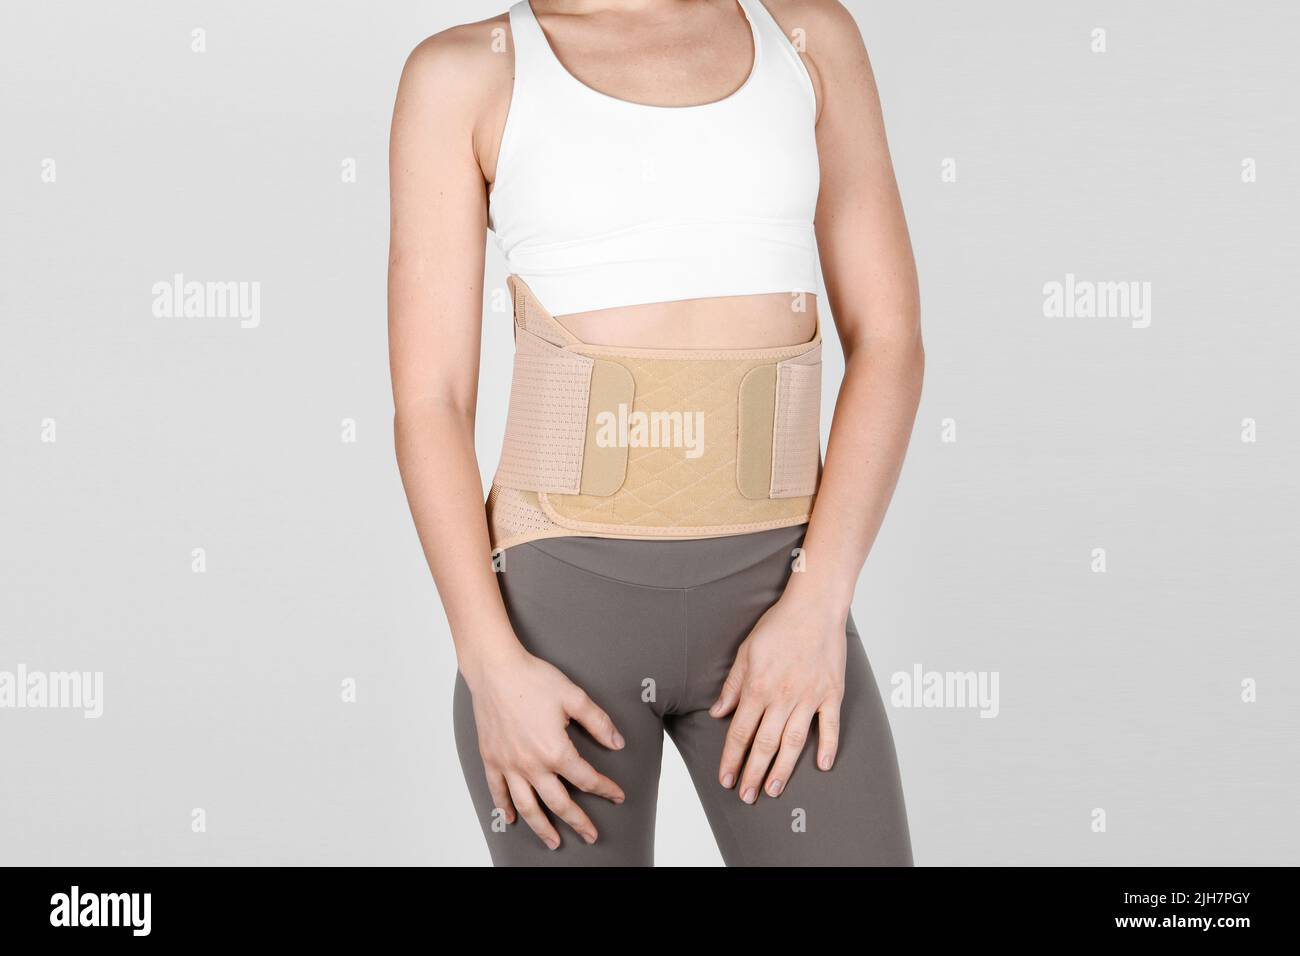 Lumbar corset hi-res stock photography and images - Alamy